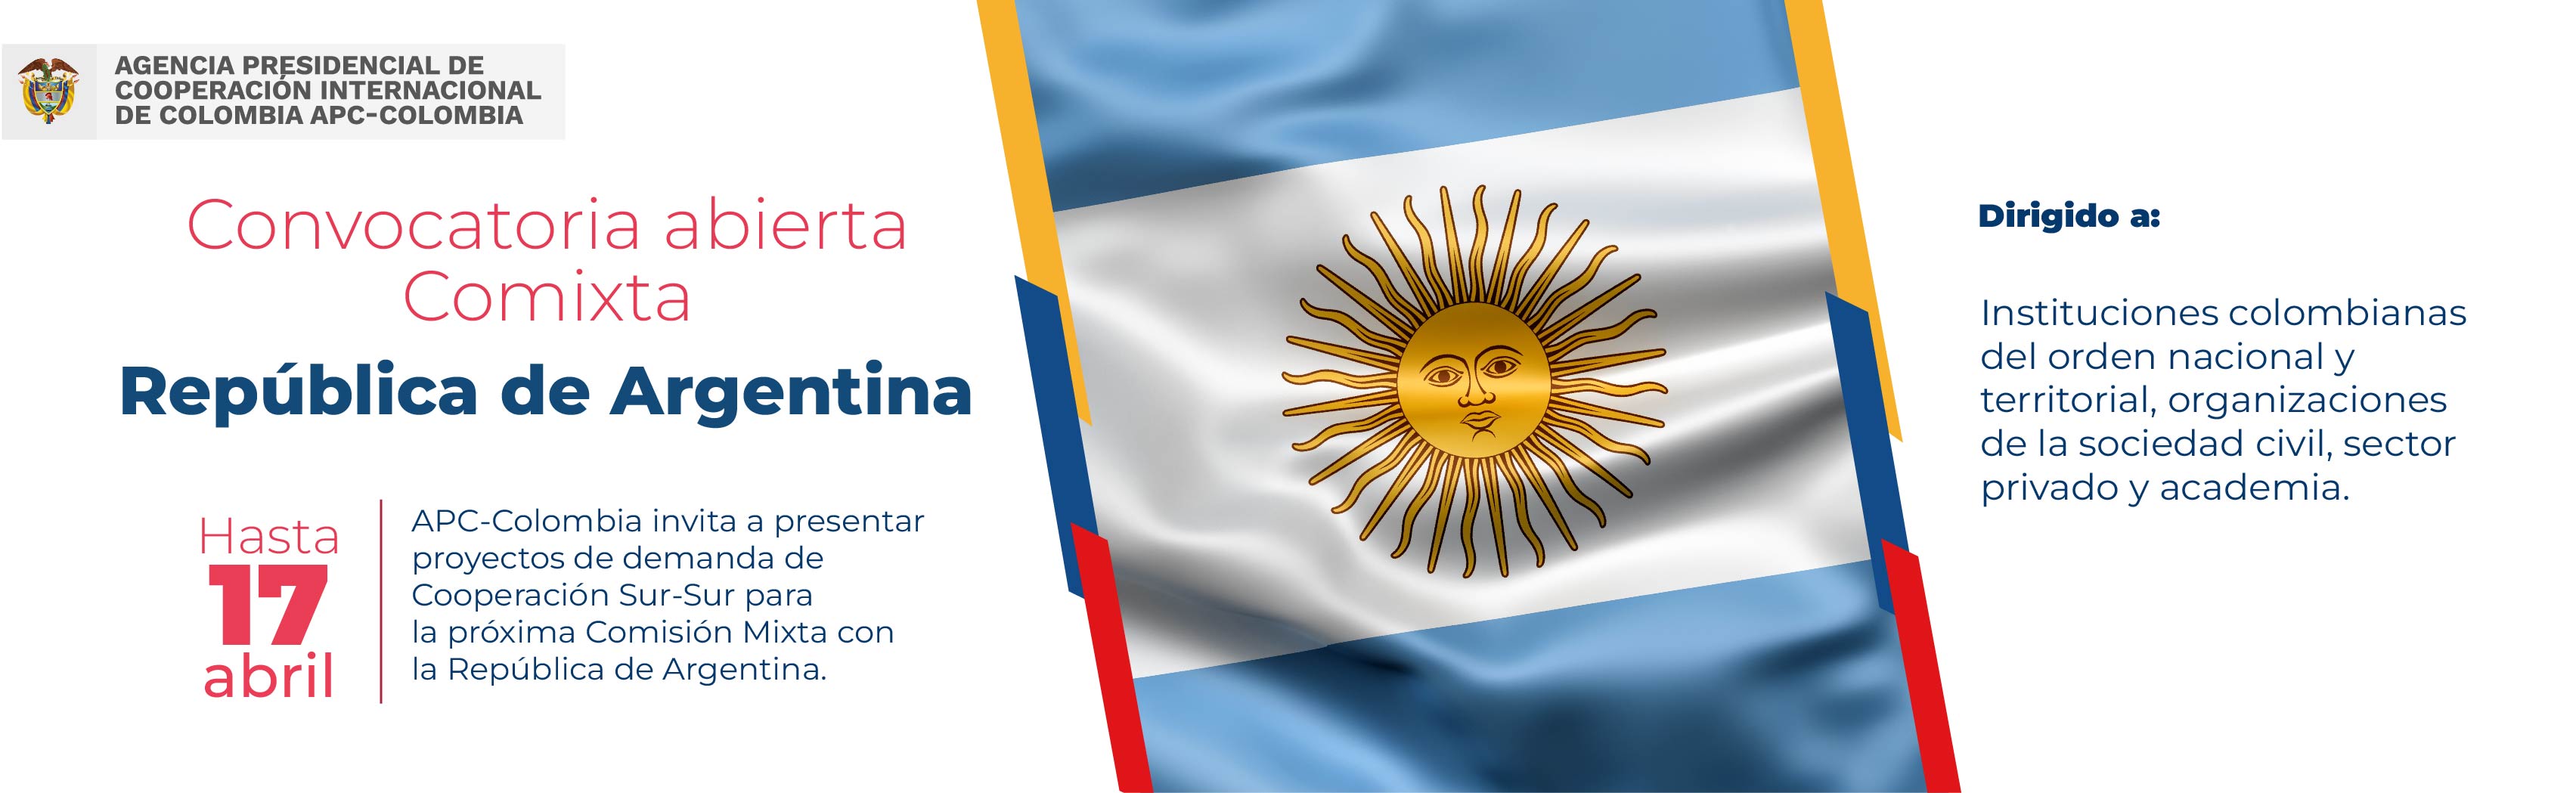 Convocatoria abierta de la Comixta entre Colombia y Argentina hasta el 17 de abril